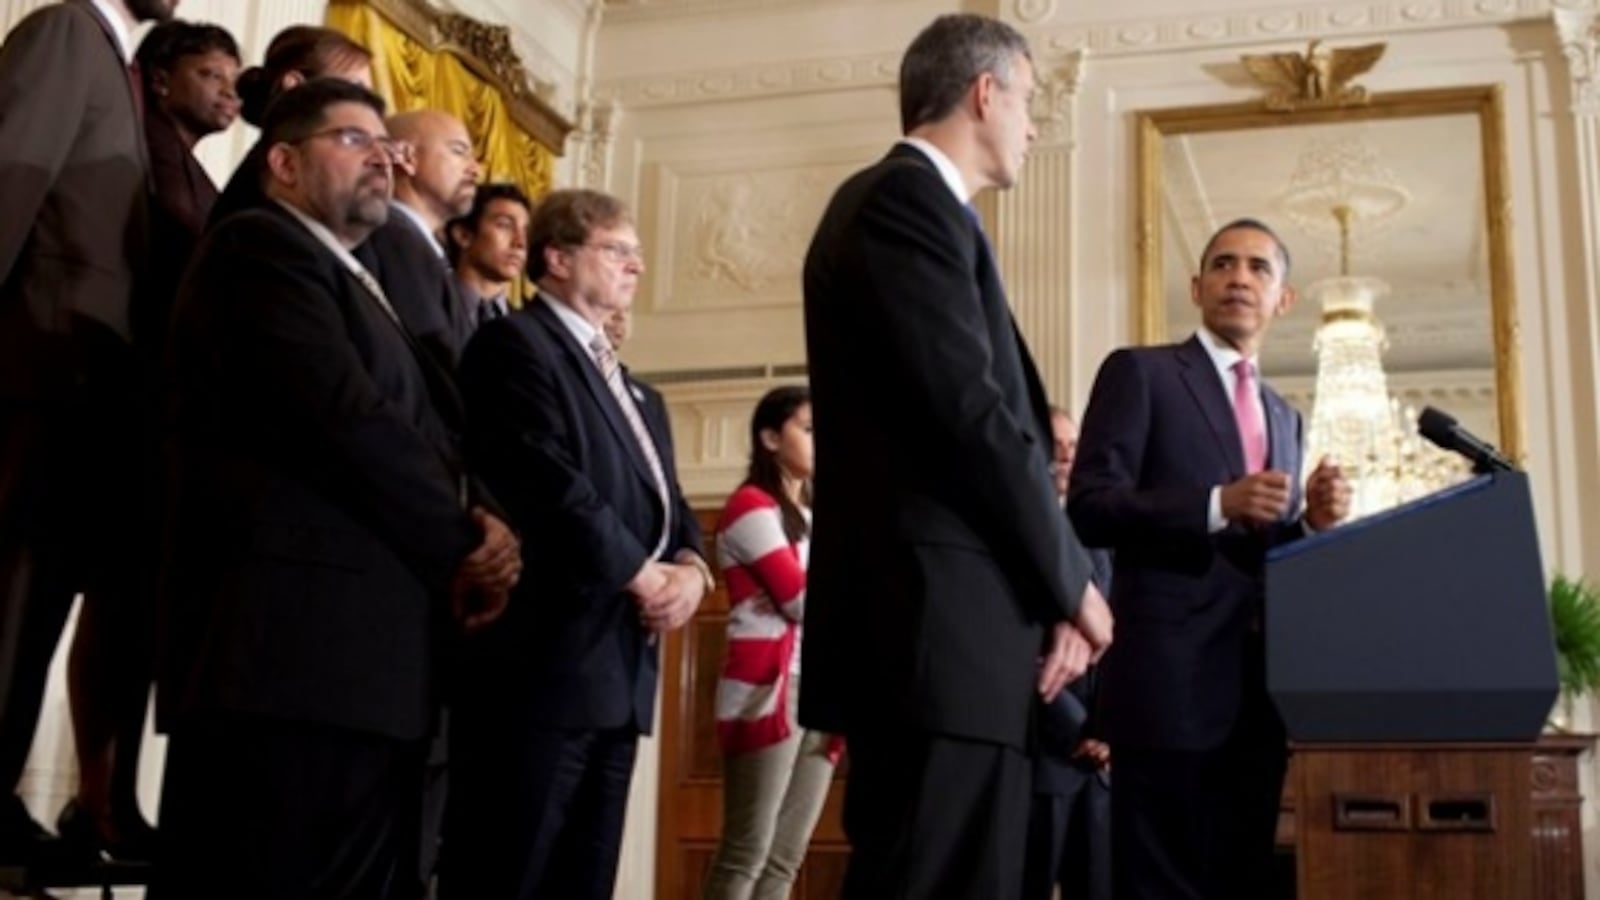 President Barack Obama looks towards U.S. Education Secretary Arne Duncan during remarks in 2011.